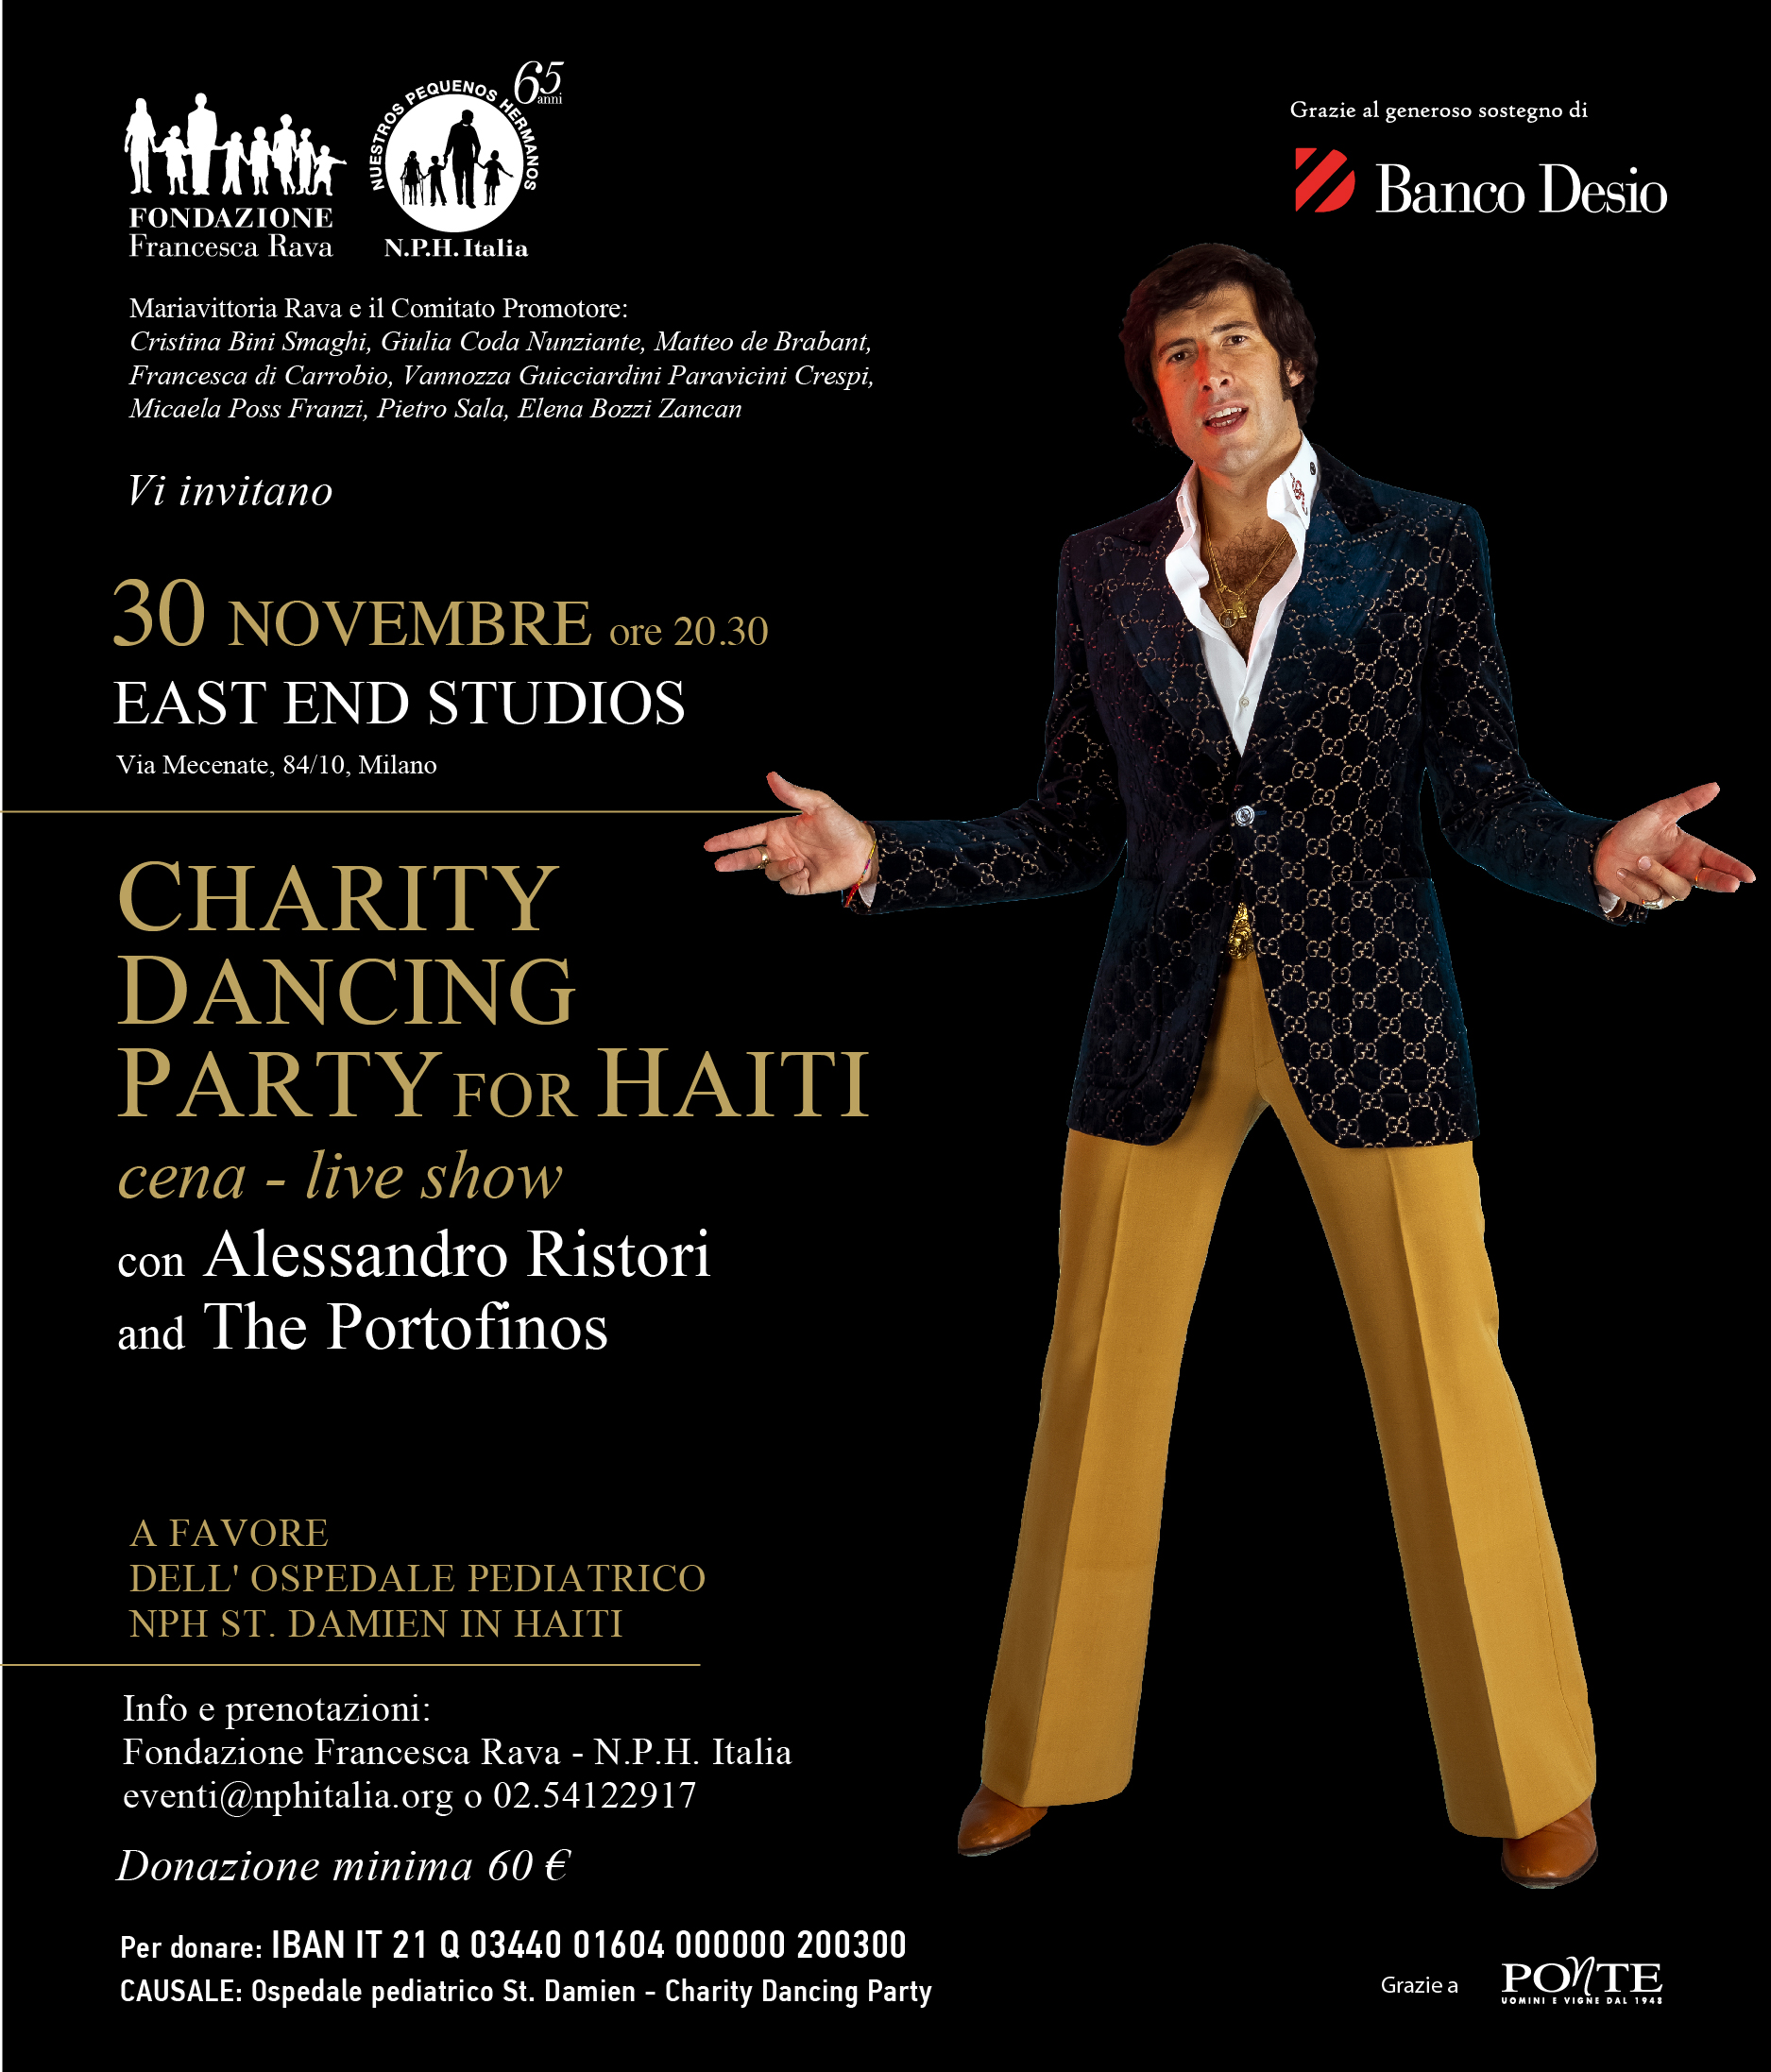 30 novembre, ore 20.30, Charity Dancing Party for Haiti agli East End Studios con Alessandro Ristori e The Portofinos!